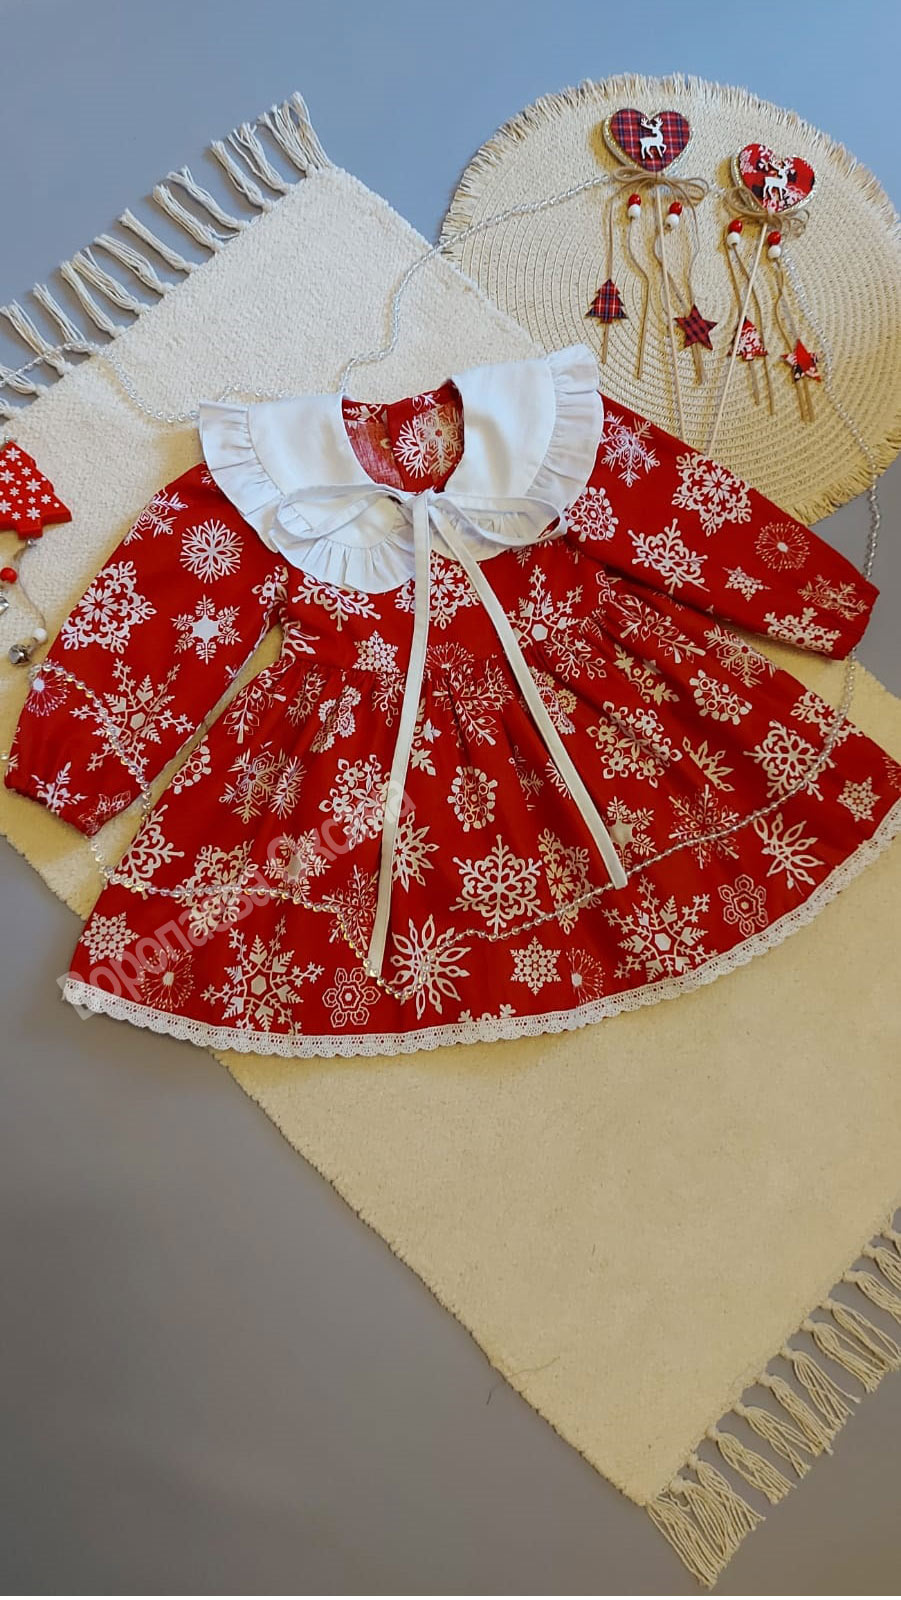 Новогоднее детское платье с накладным воротничком - цена 1800 руб. + 700 руб. за воротник